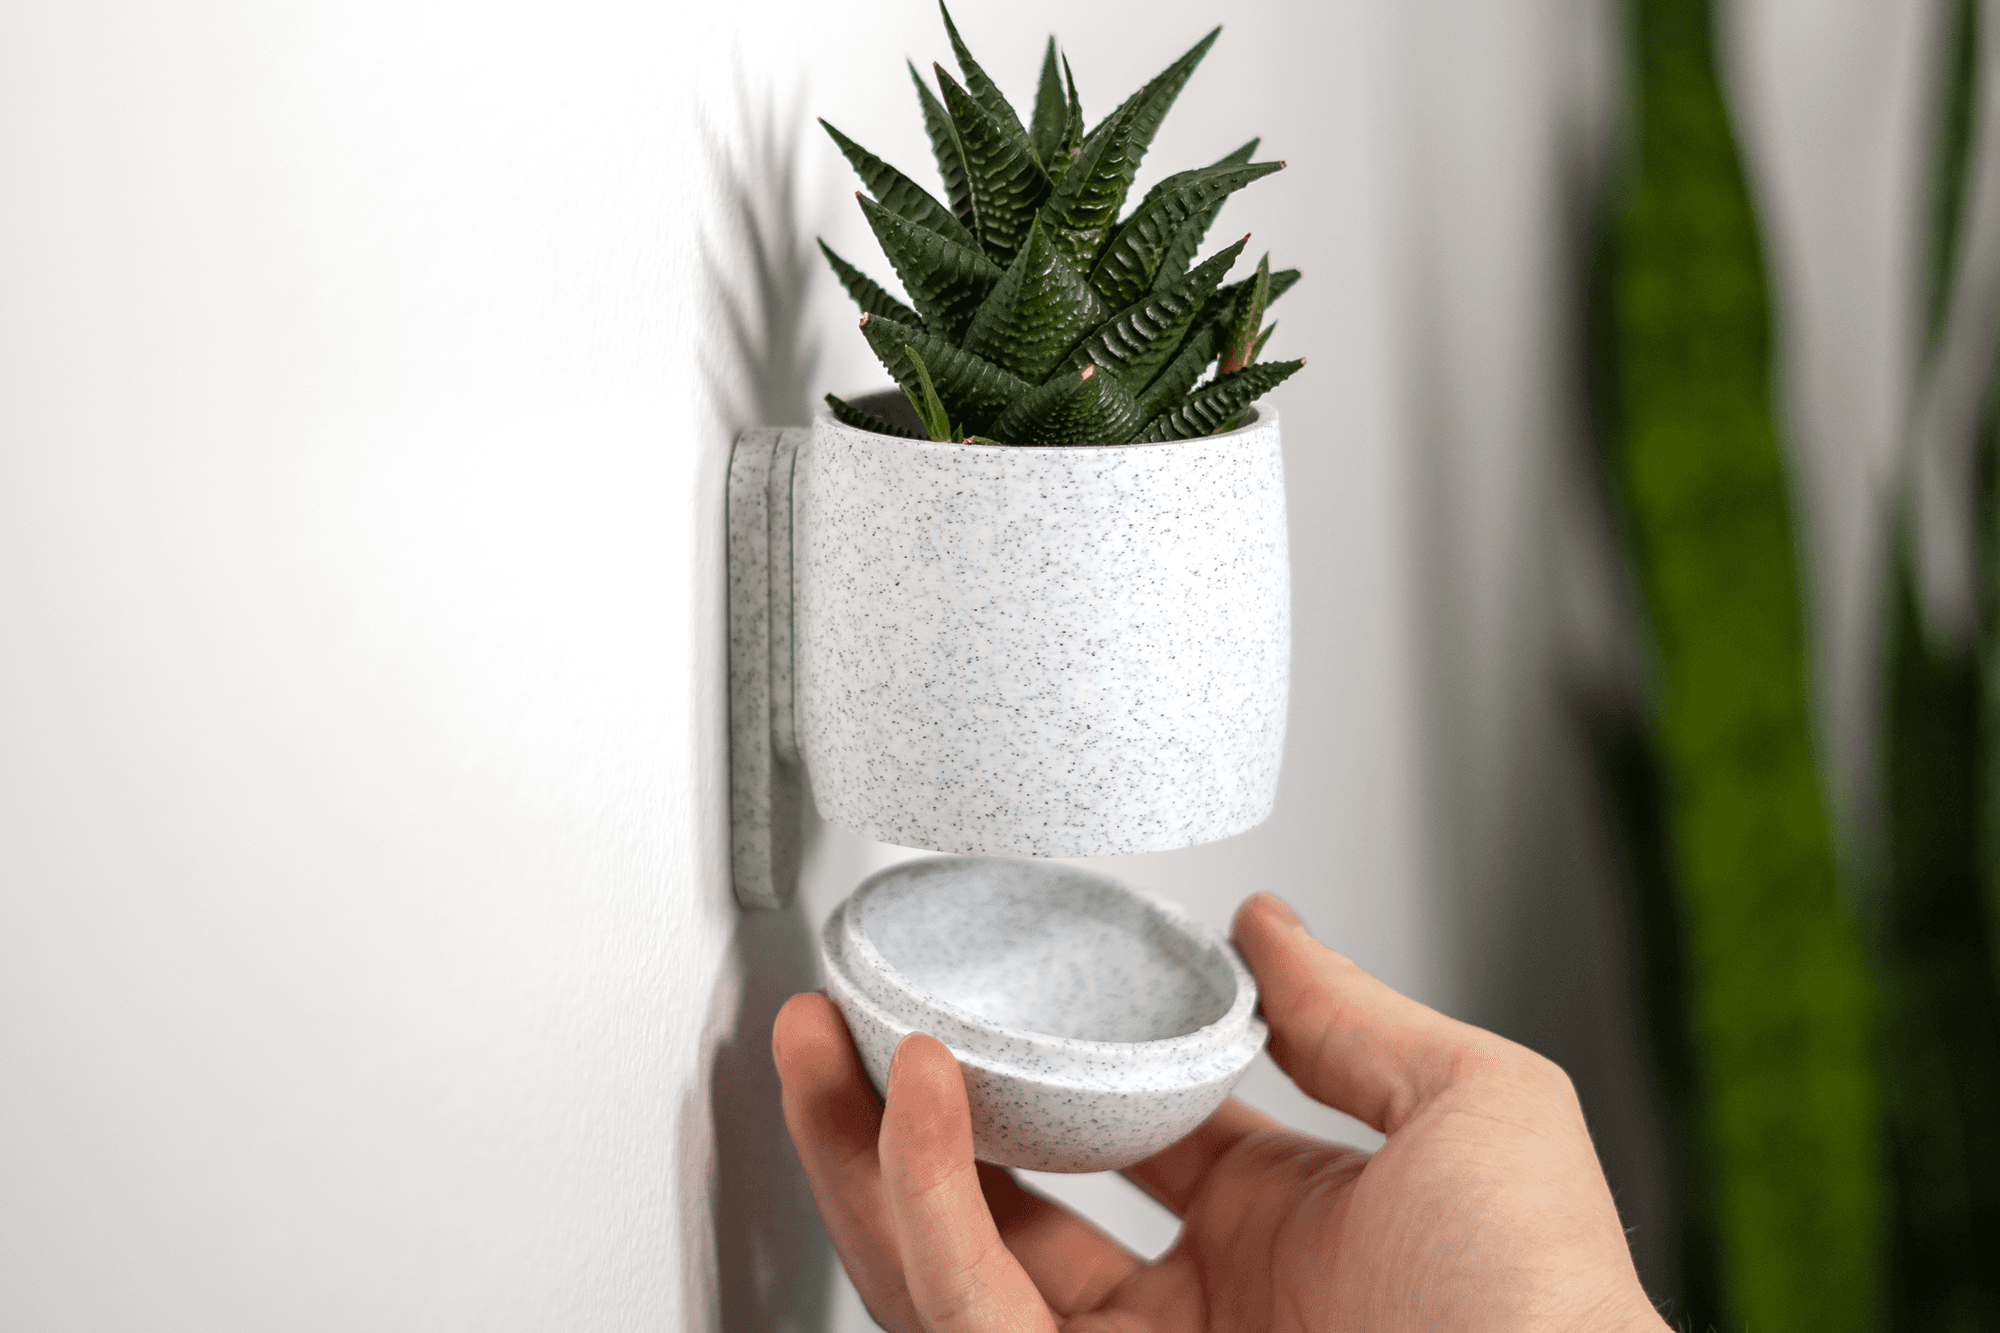 Simple Cup Planter 3d model